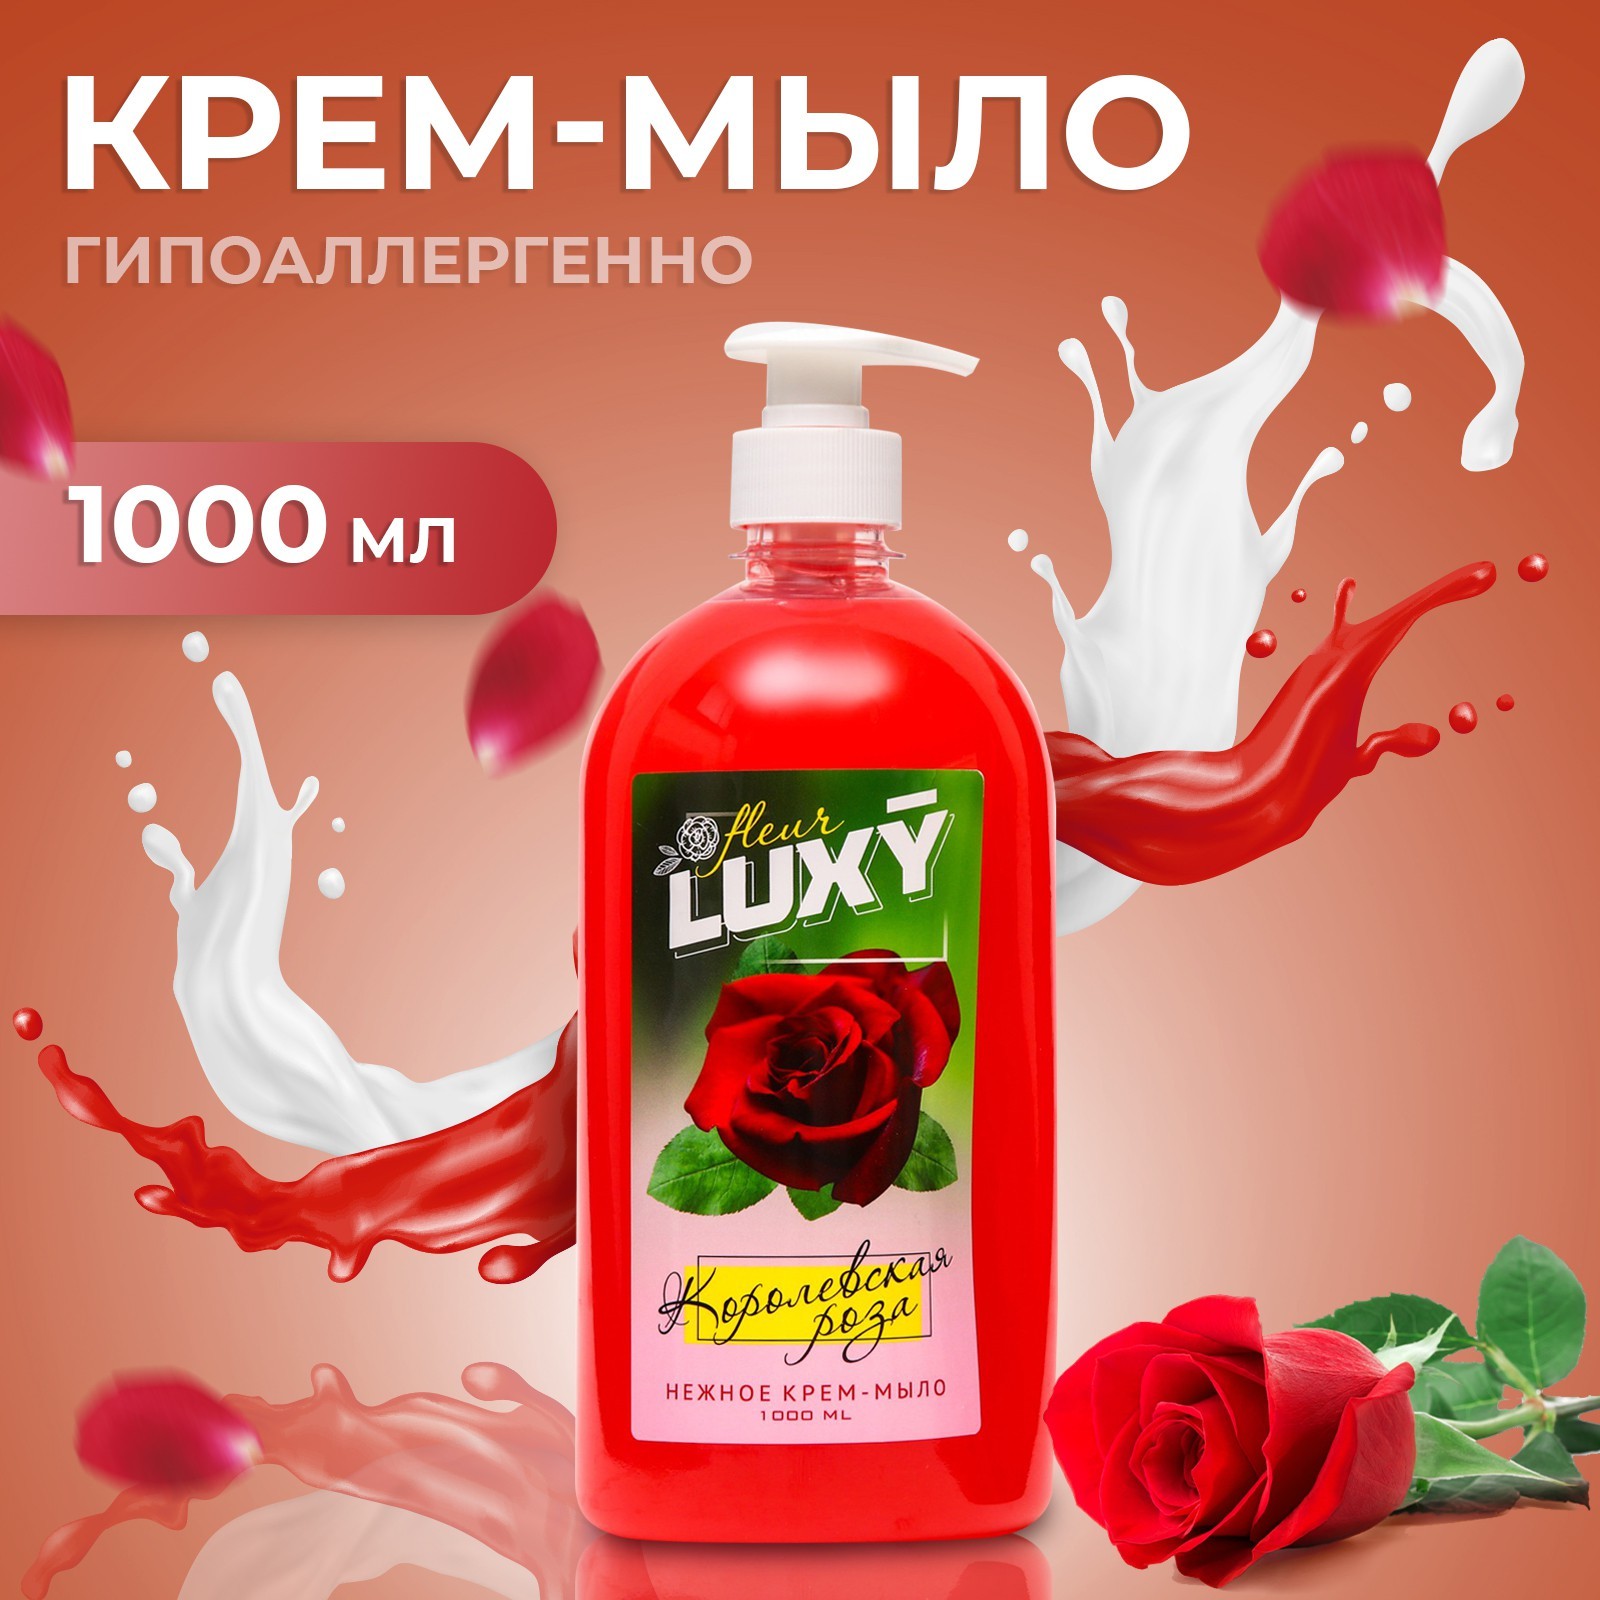 Крем-мыло жидкое Luxy Fleur королевская роза с дозатором 1 л крем мыло для рук и тела mariakas жидкое парфюмированное fleur 300 ml